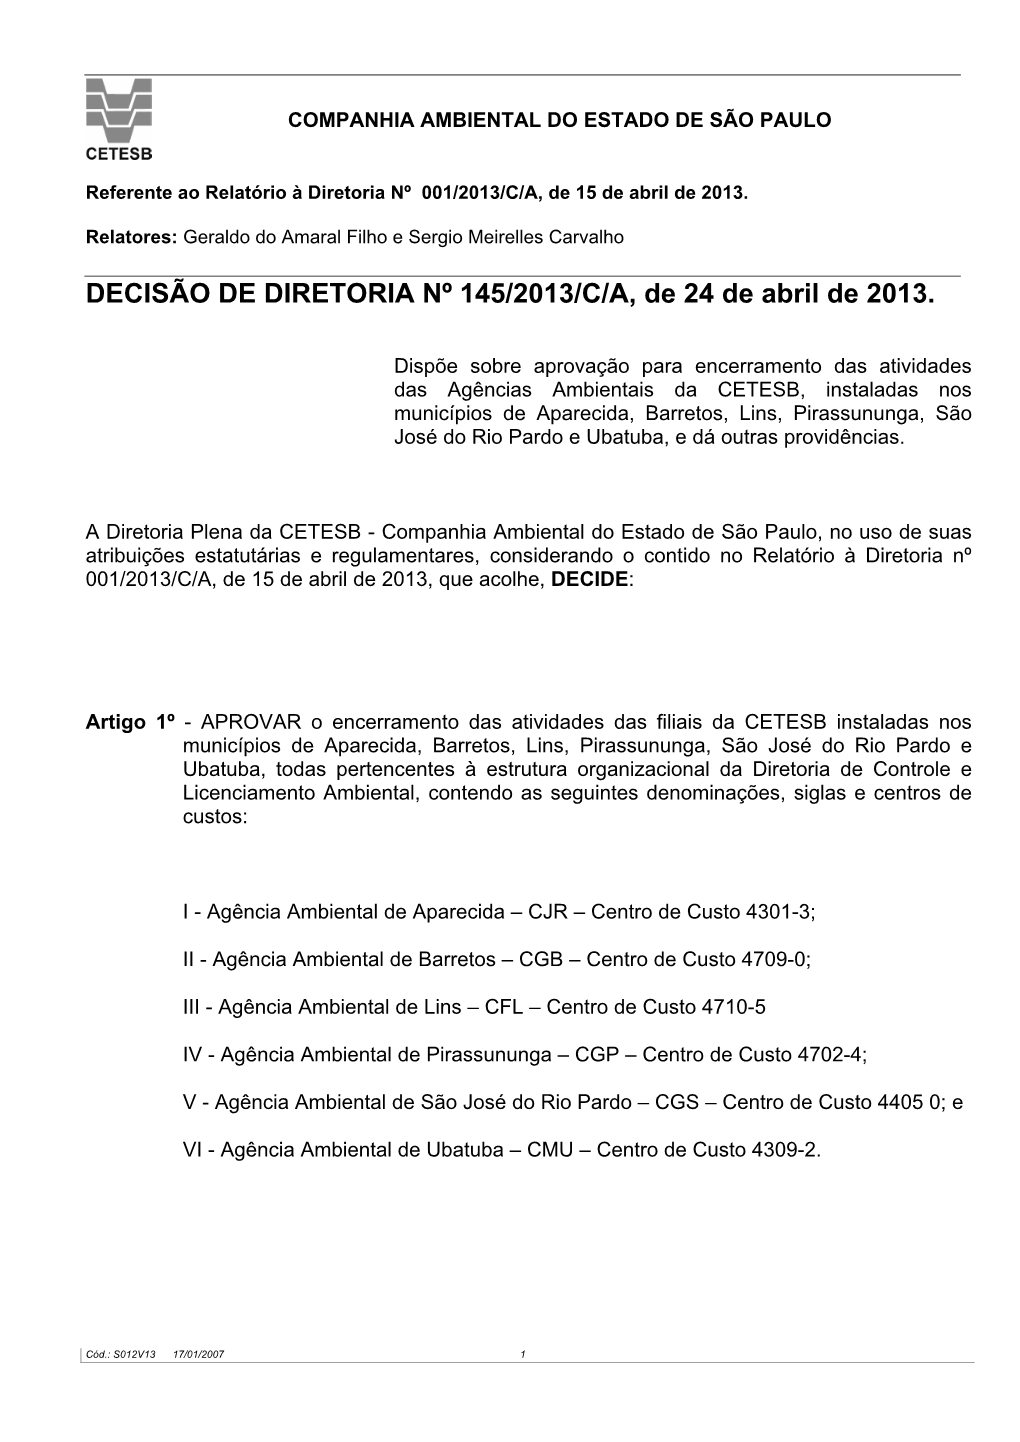 DECISÃO DE DIRETORIA Nº 145/2013/C/A, De 24 De Abril De 2013